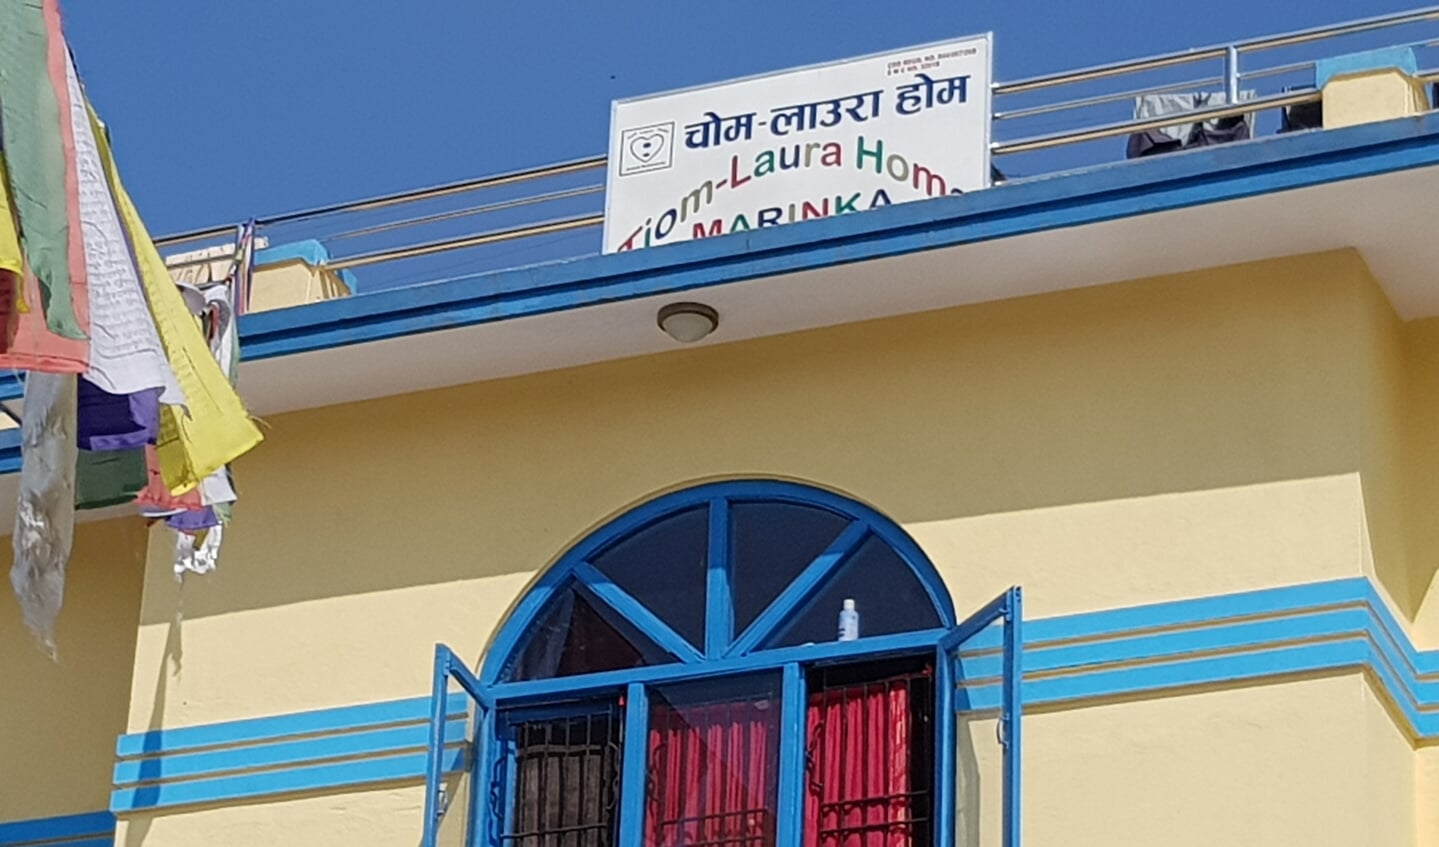 Kinderhuis Marinka Home in Kathmandu.